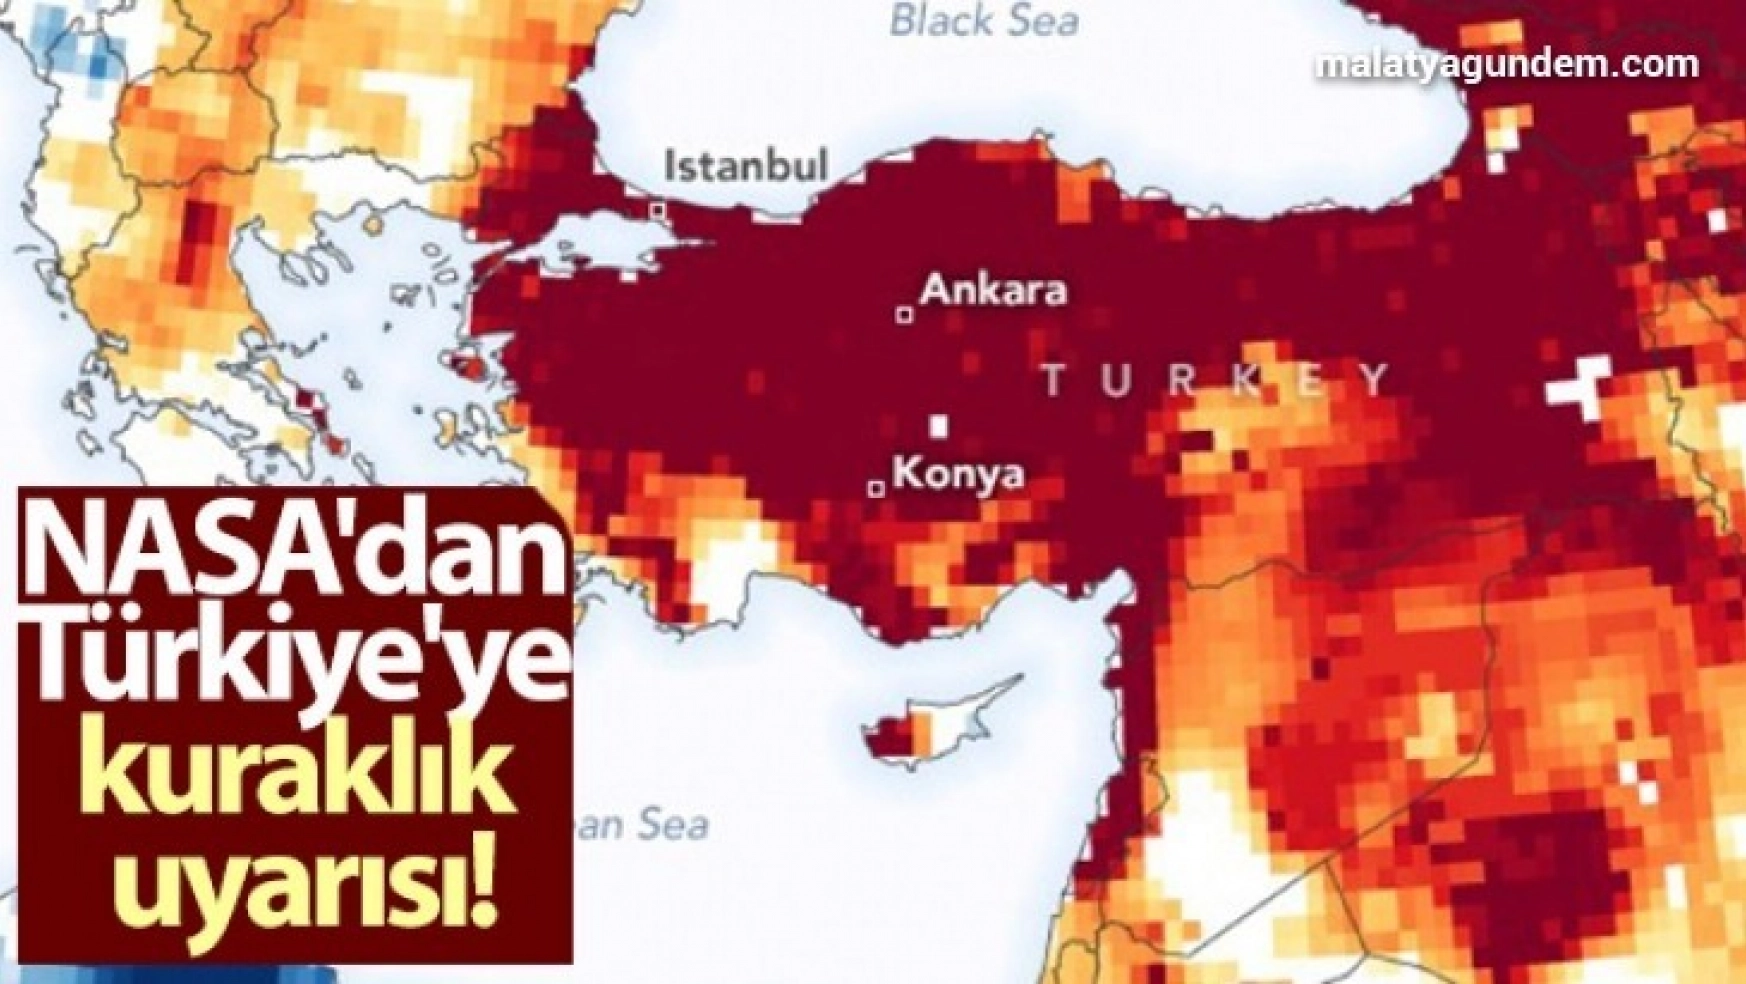 NASA'dan Türkiye'ye kuraklık uyarısı